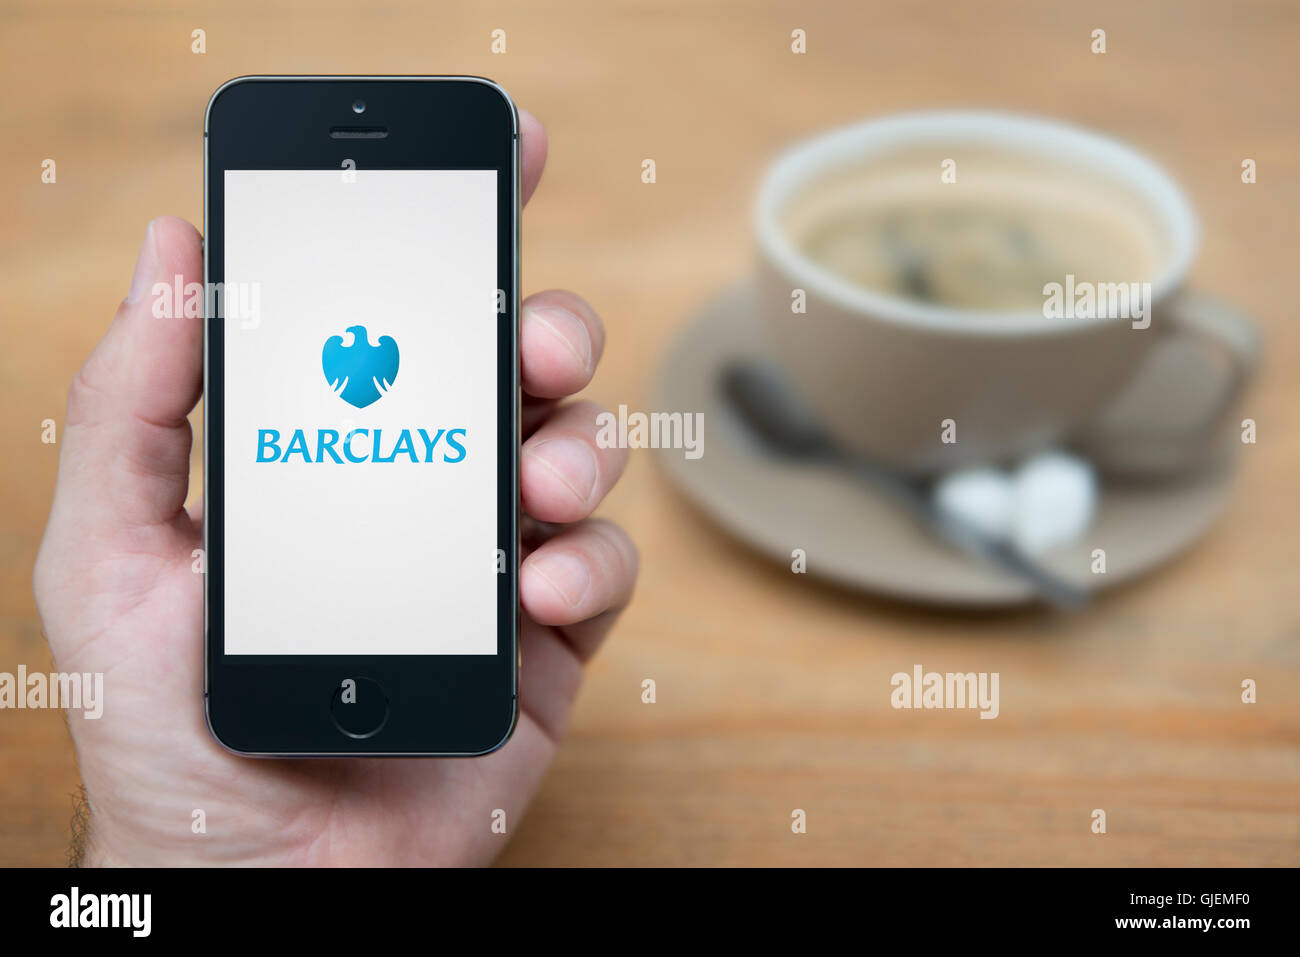 Un hombre mira el iPhone que muestra el logotipo de Barclays Bank, mientras que se sentó con una taza de café (uso Editorial solamente). Foto de stock